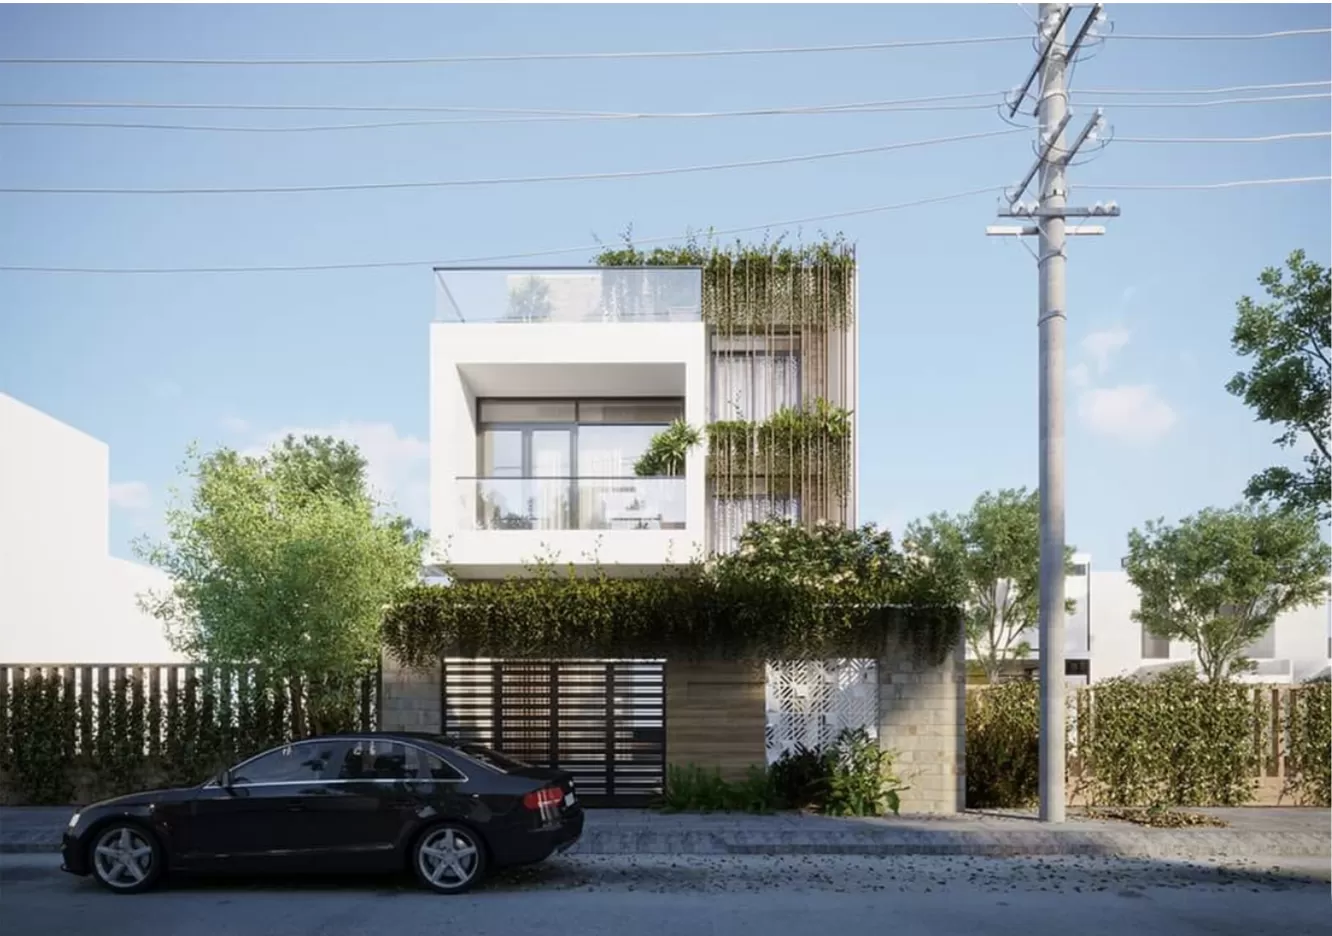 Thiết kế phối hợp không gian cây cỏ biến ngôi nhà thành nguồn sống dồi dào